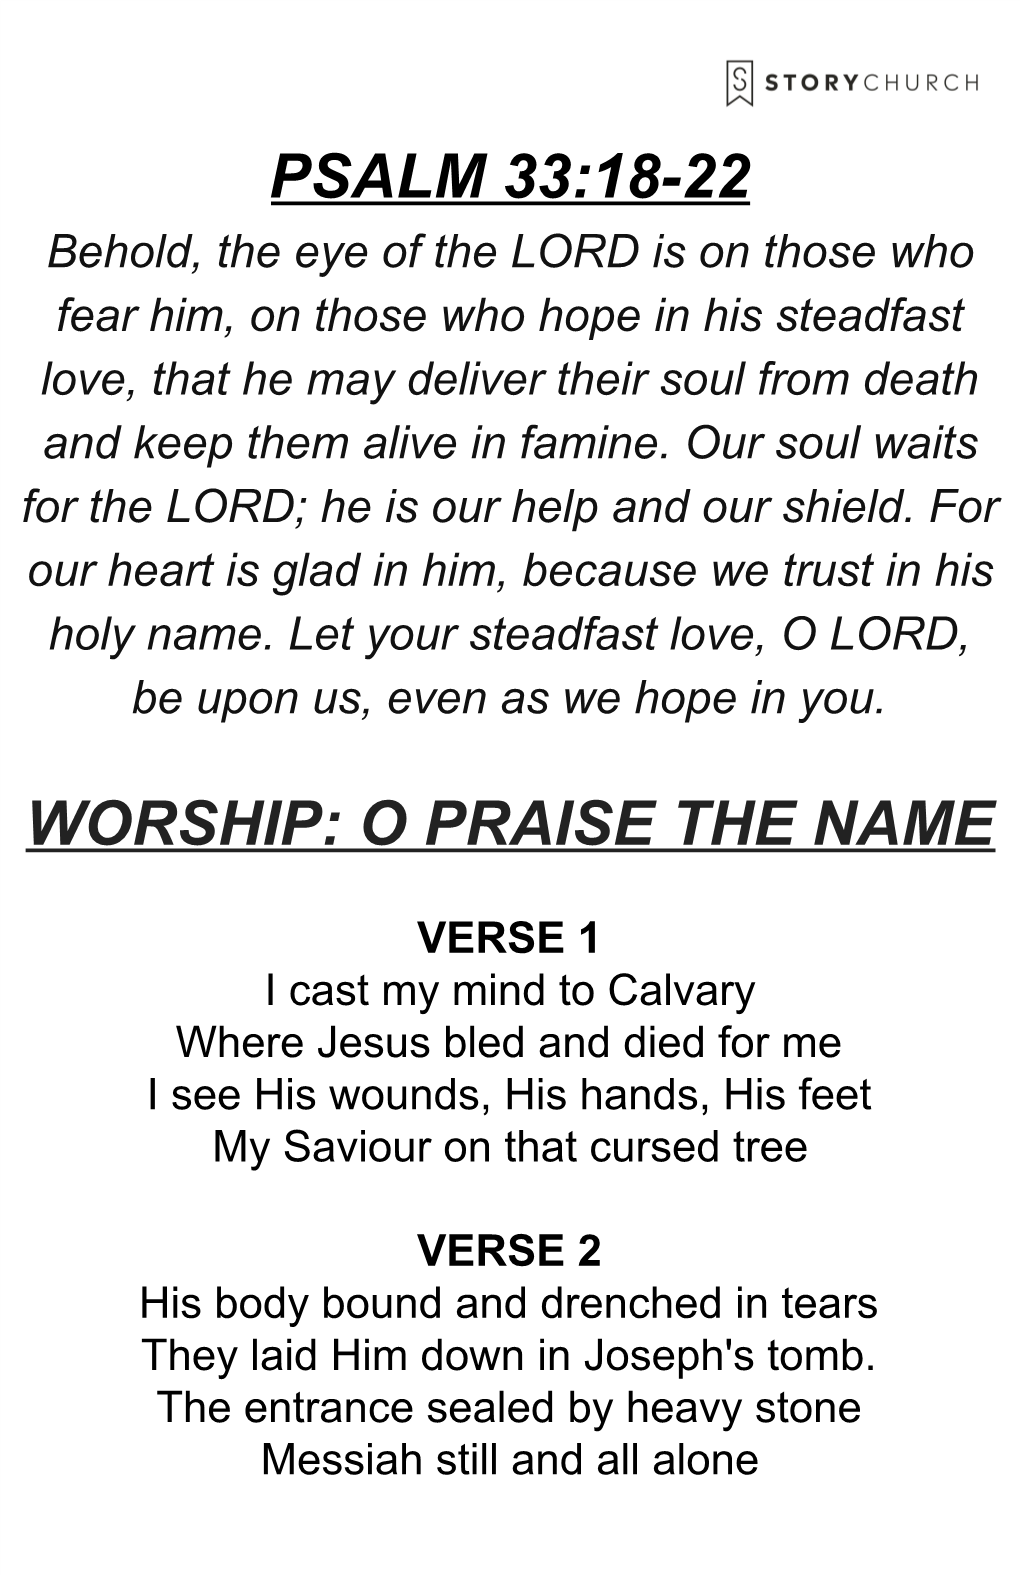 Psalm 33:18-22 Worship: O Praise the Name